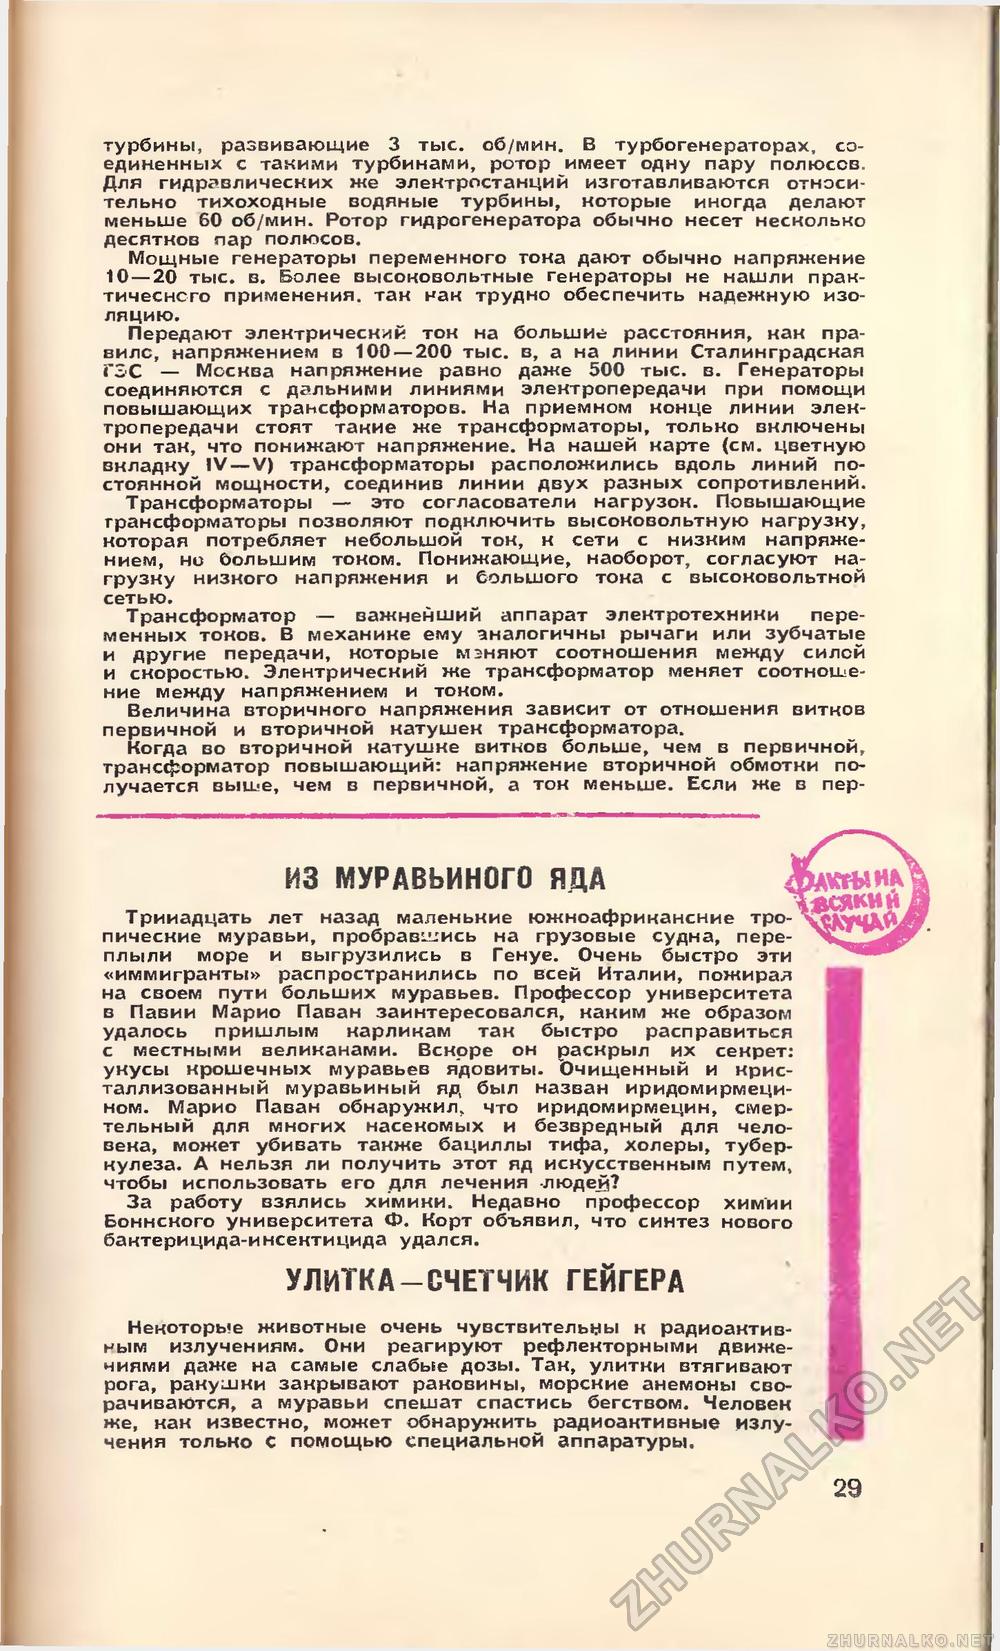   1960-02,  31